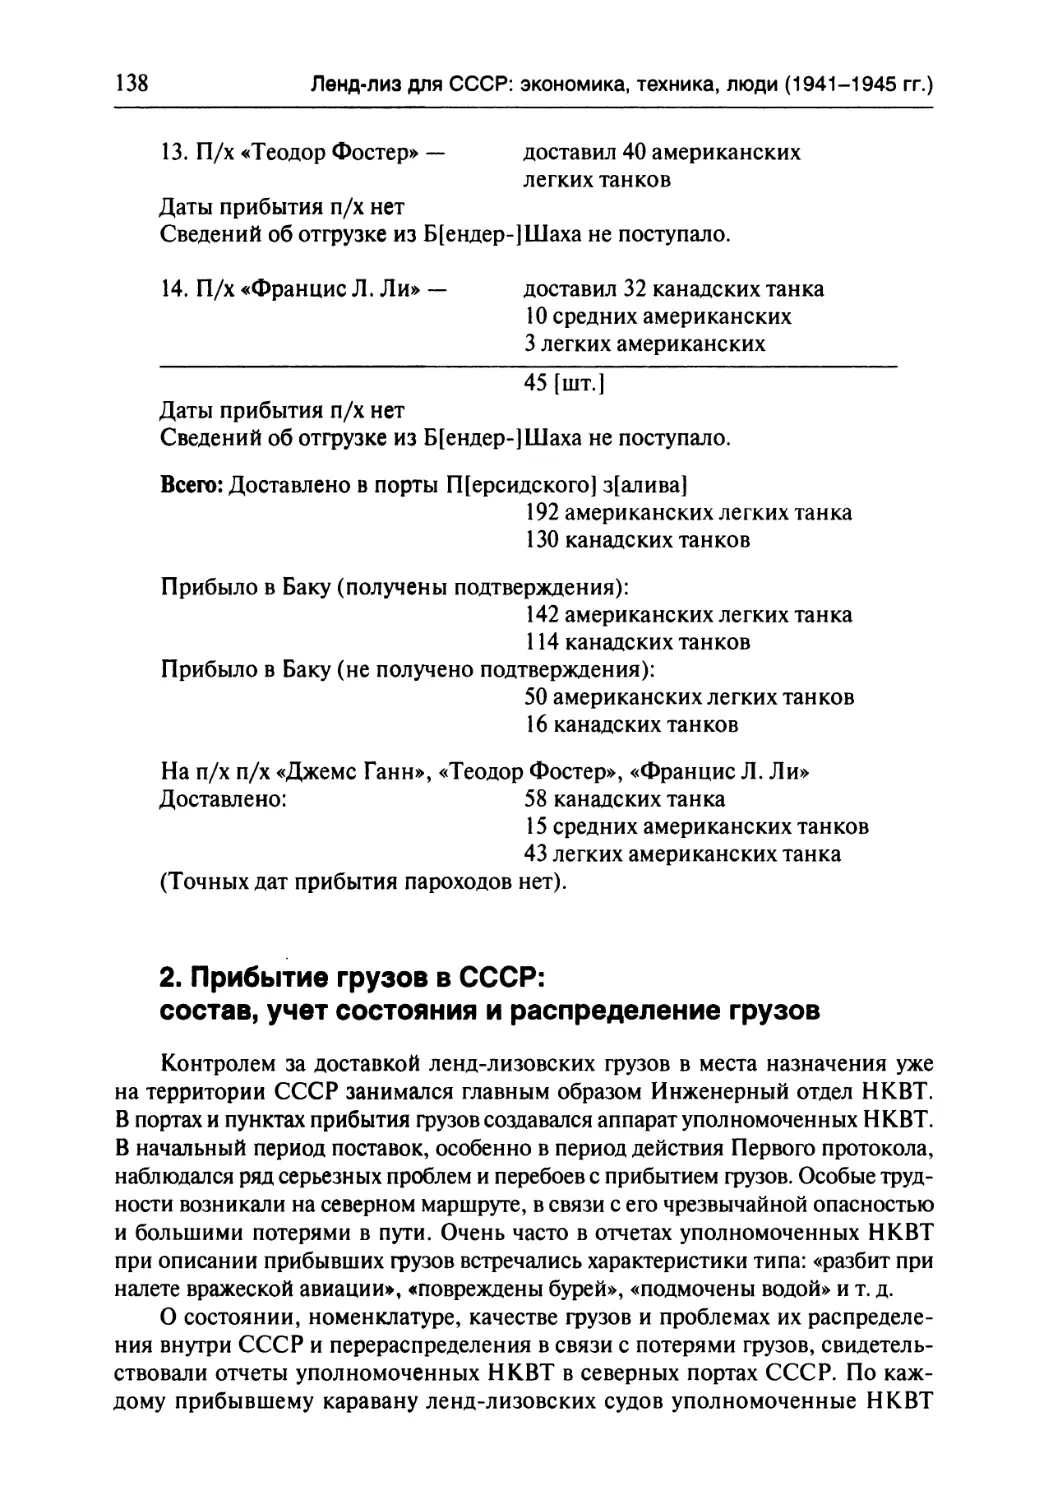 2. Прибытие грузов в СССР: состав, учет состояния и распределение грузов